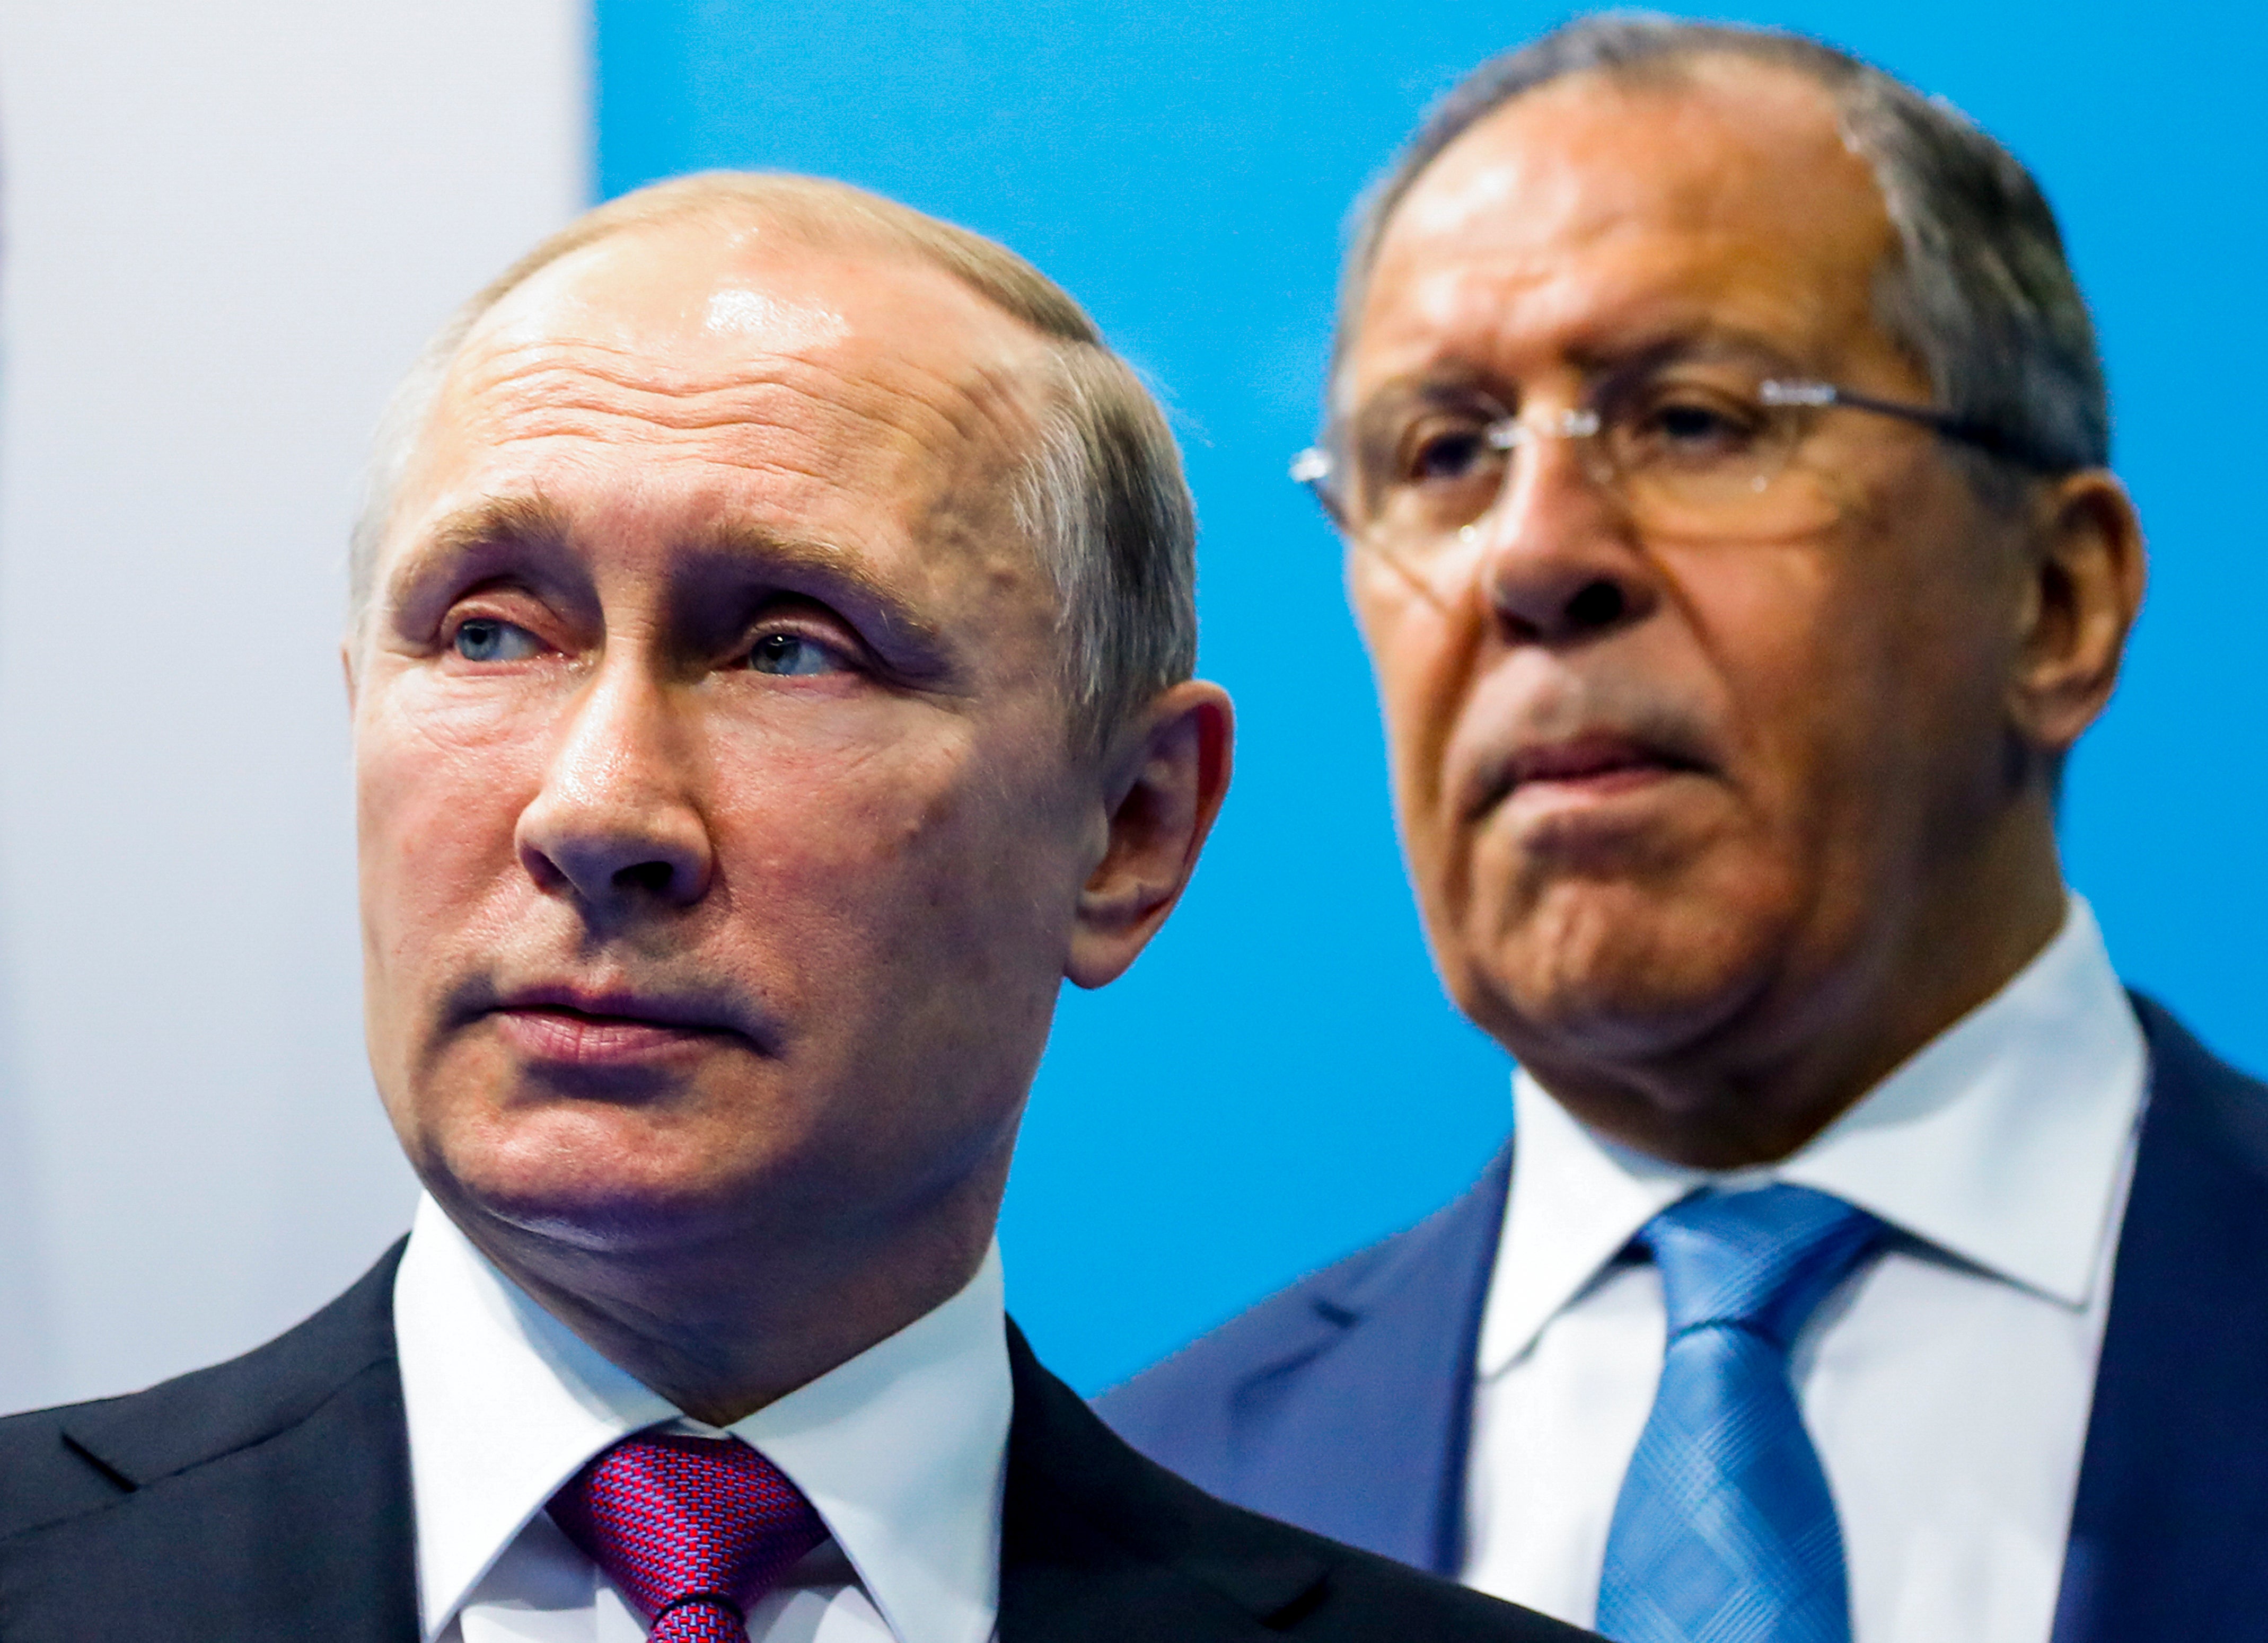 El presidente Vladmir Putin junto a su ministro de defensa, Sergei Lavrov. Se bloquearon los activos extranjeros de ambos